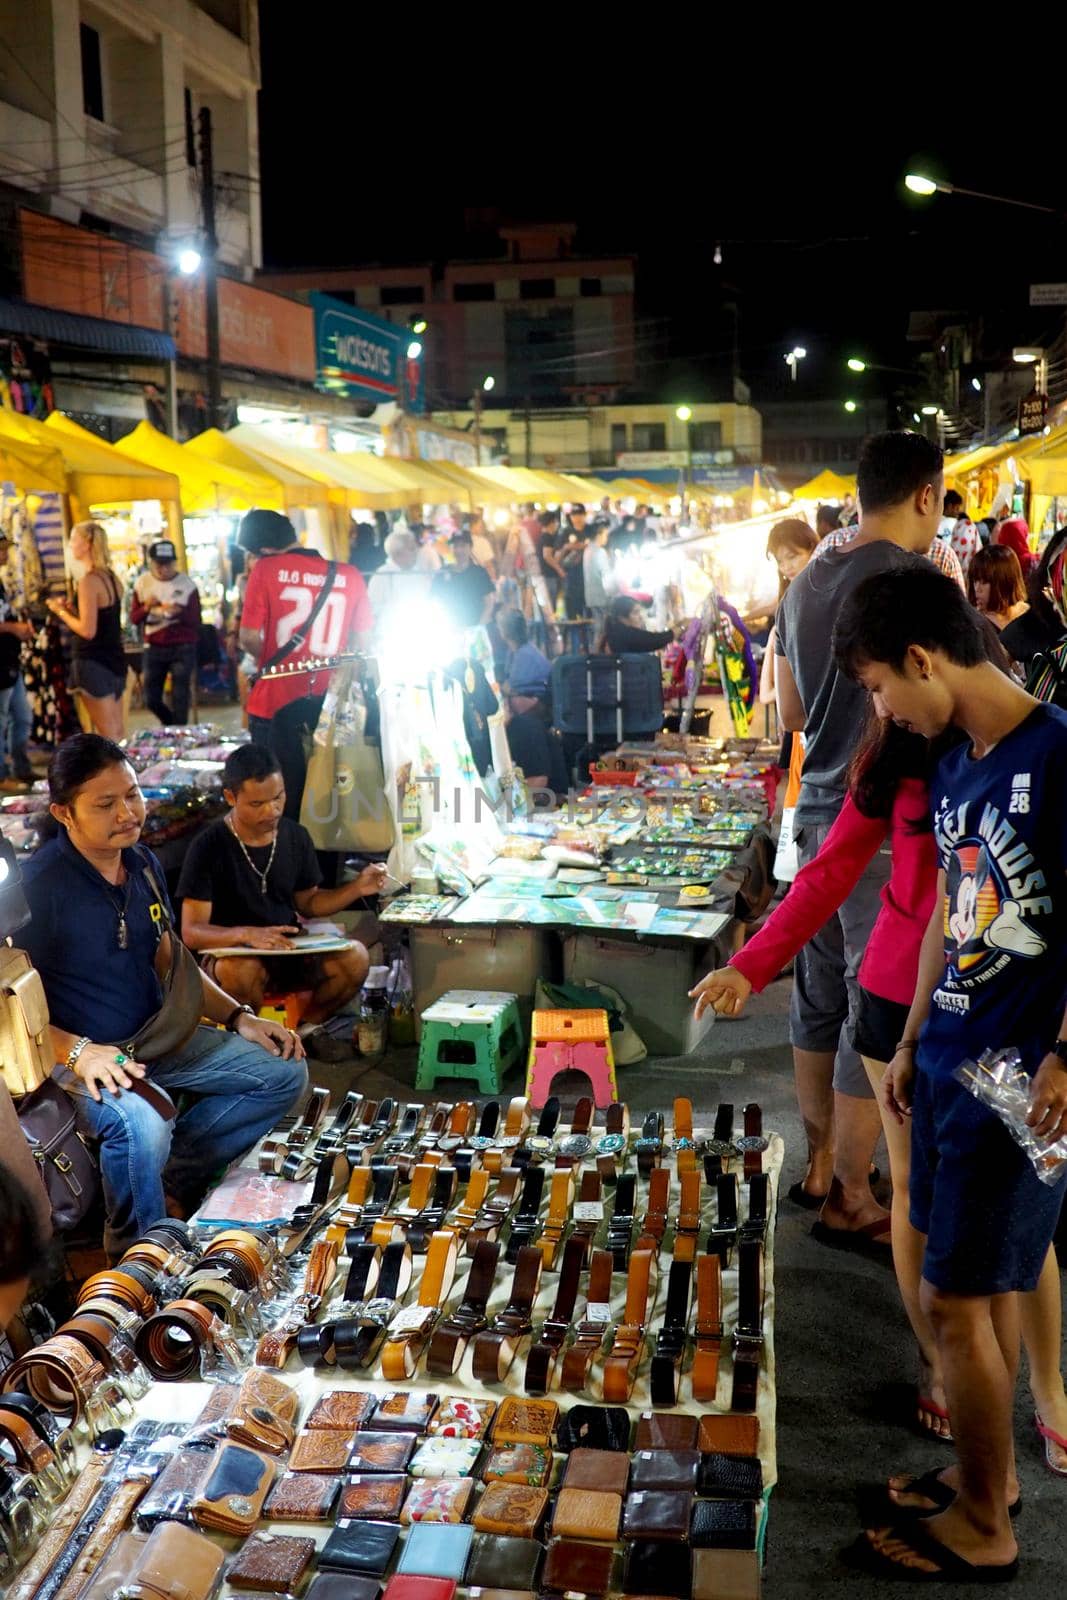 Night market in Thailand by fivepointsix